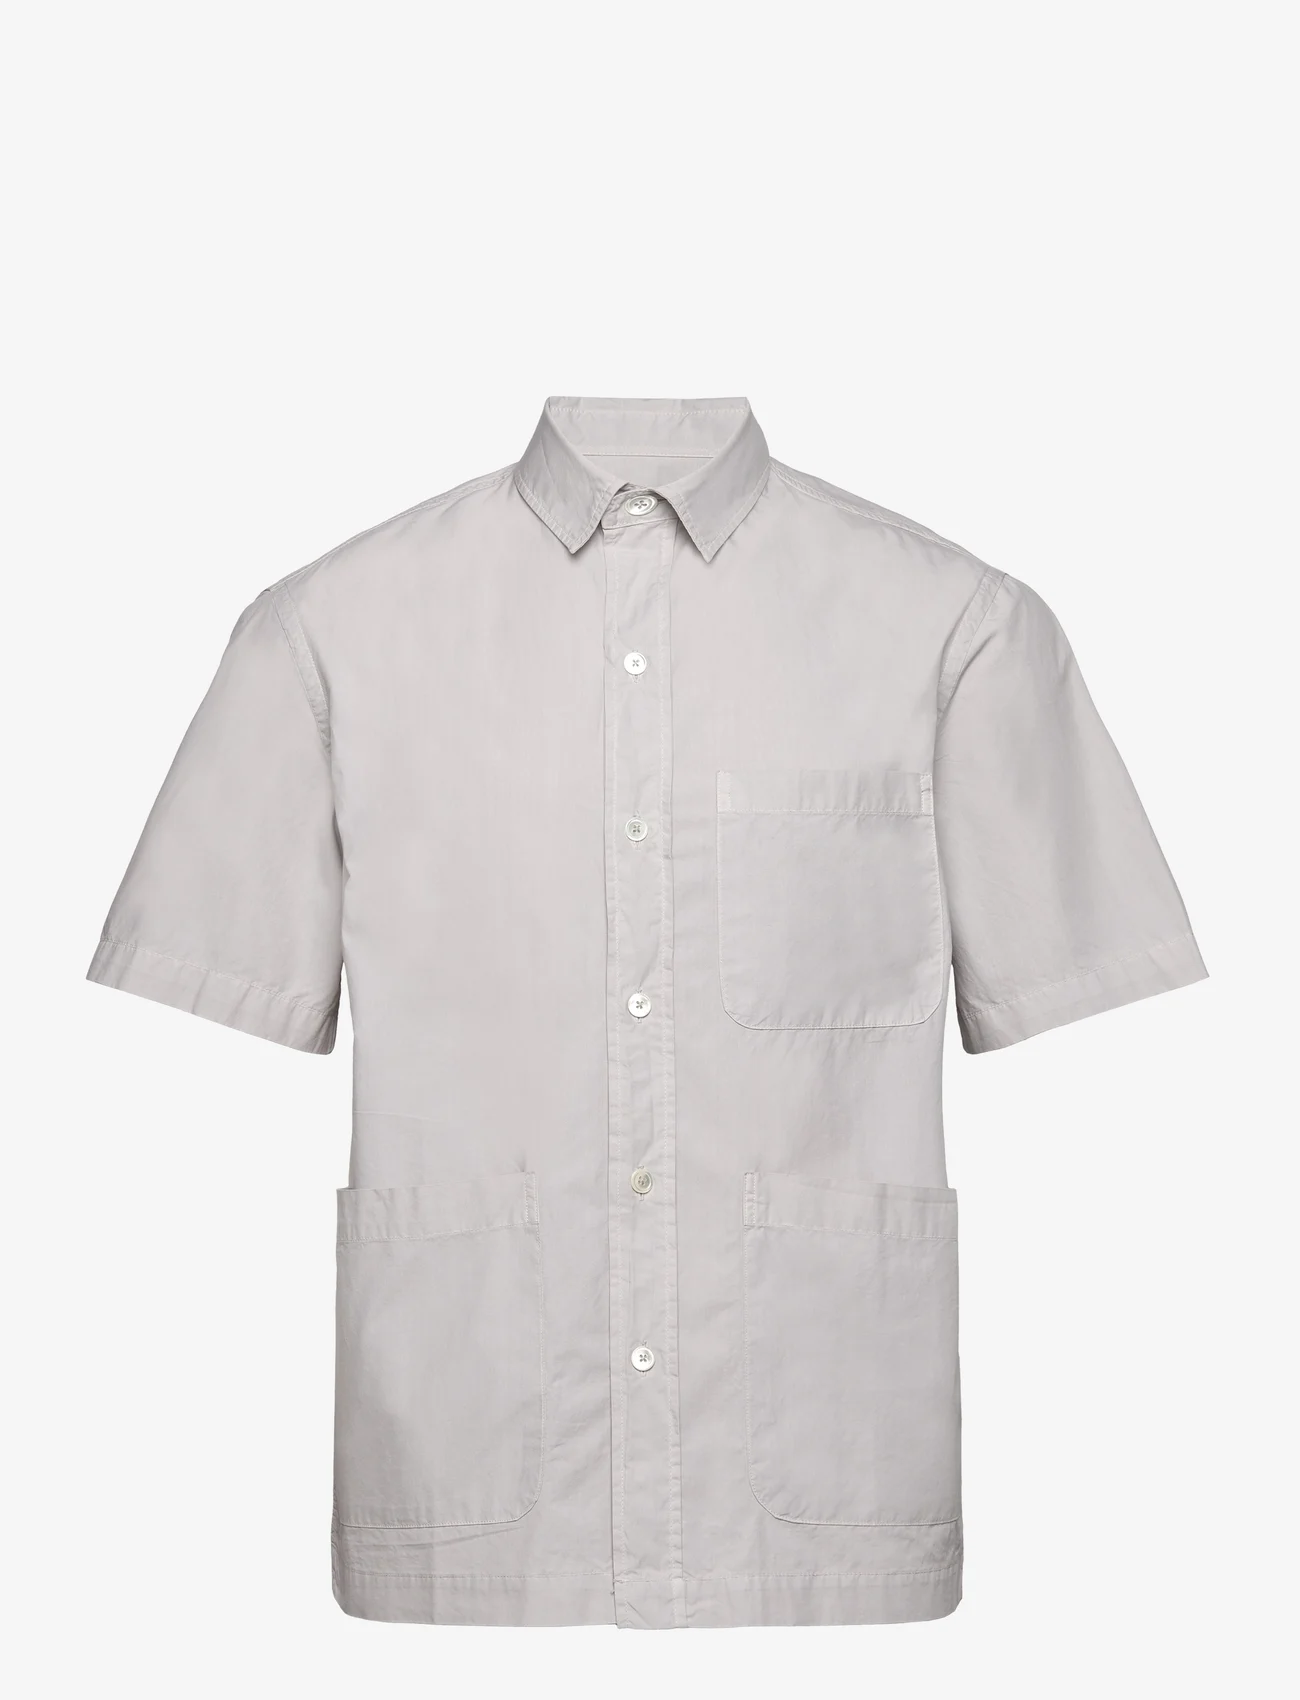 Garment Project - Short Sleeved Shirt - Bone White - kortermede skjorter - bone white - 0